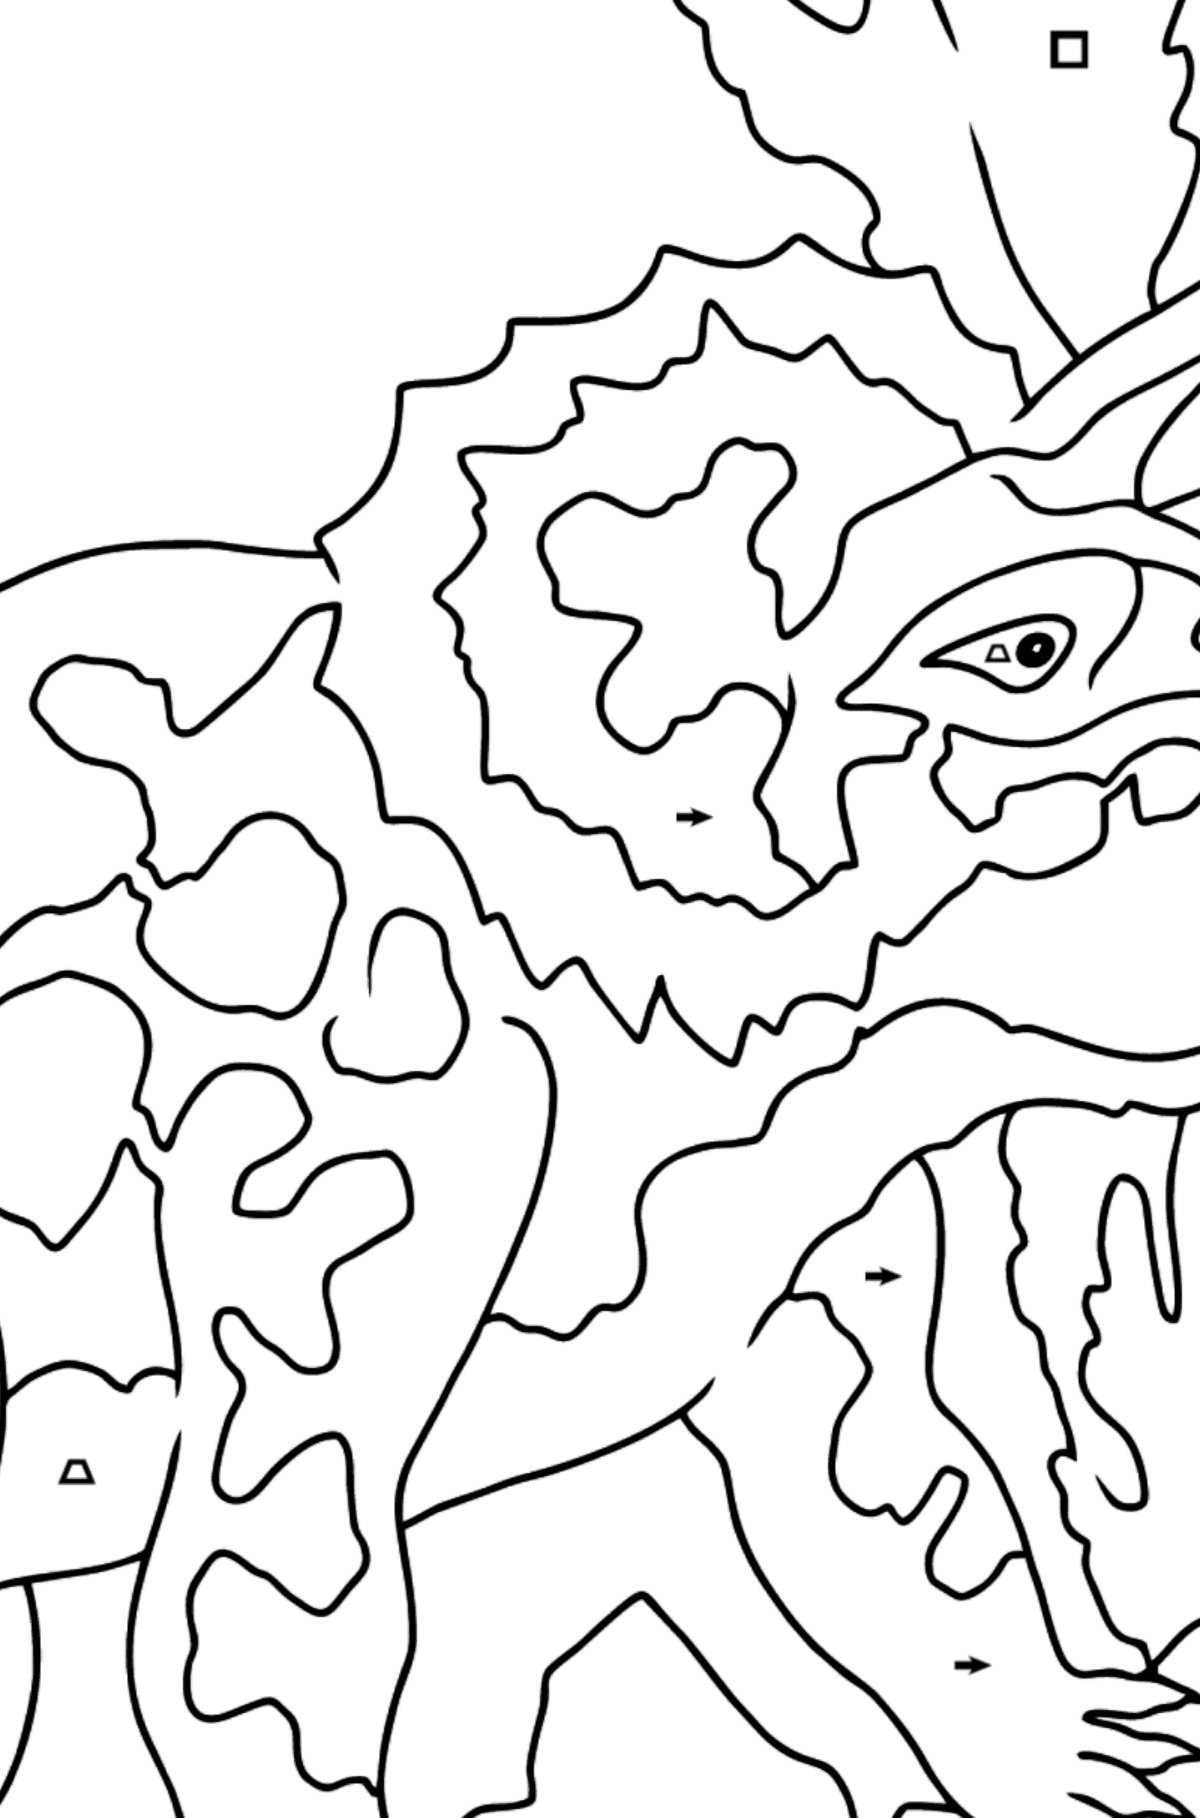 Dibujo para colorear Triceratops (fácil) - Colorear por Símbolos para Niños